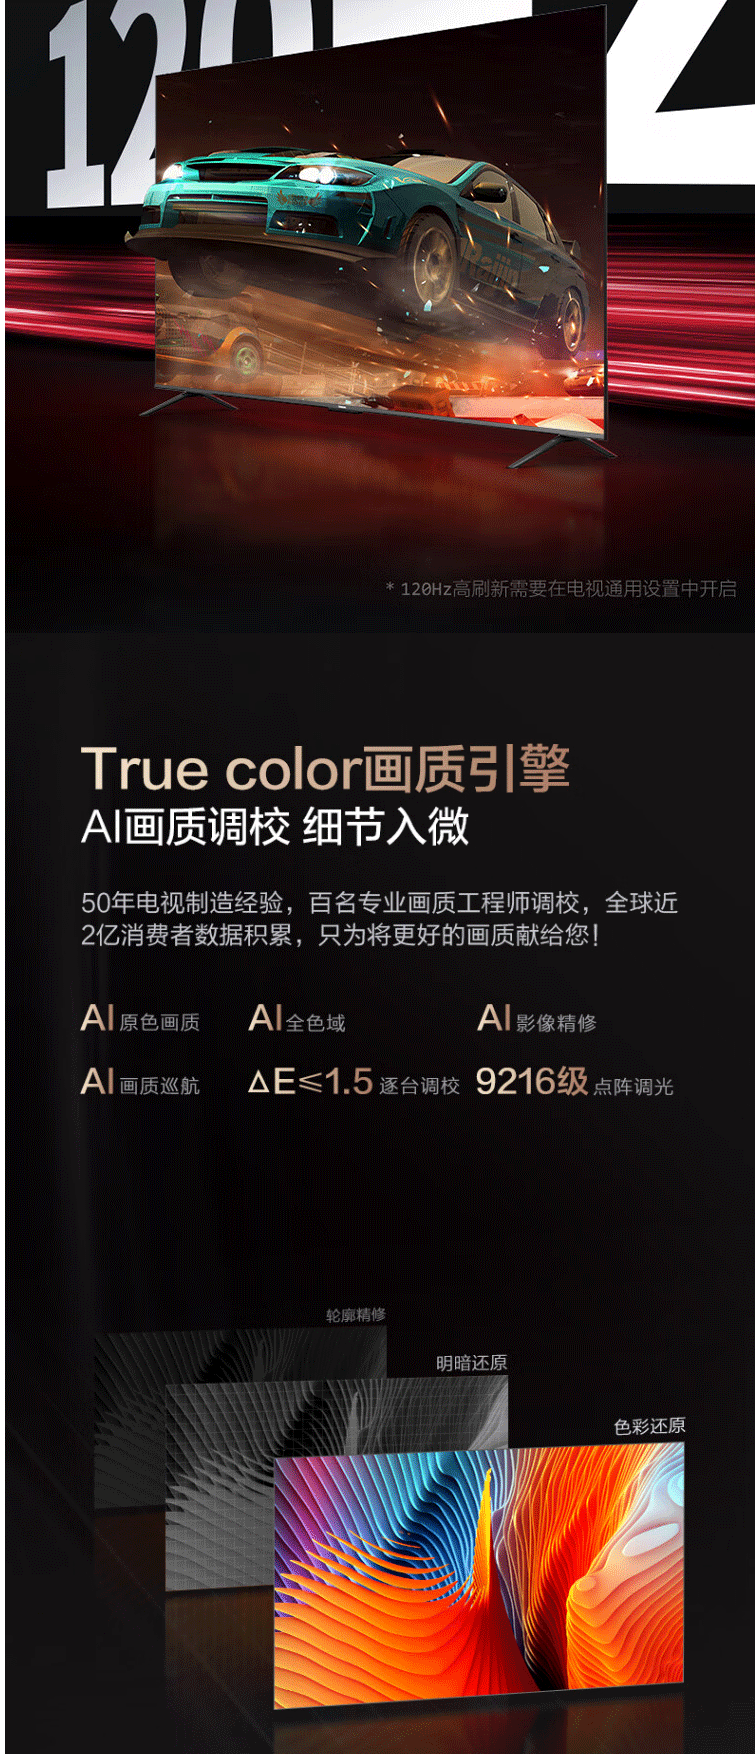 长虹/CHANGHONG 85D5 85英寸4K超清120Hz高刷